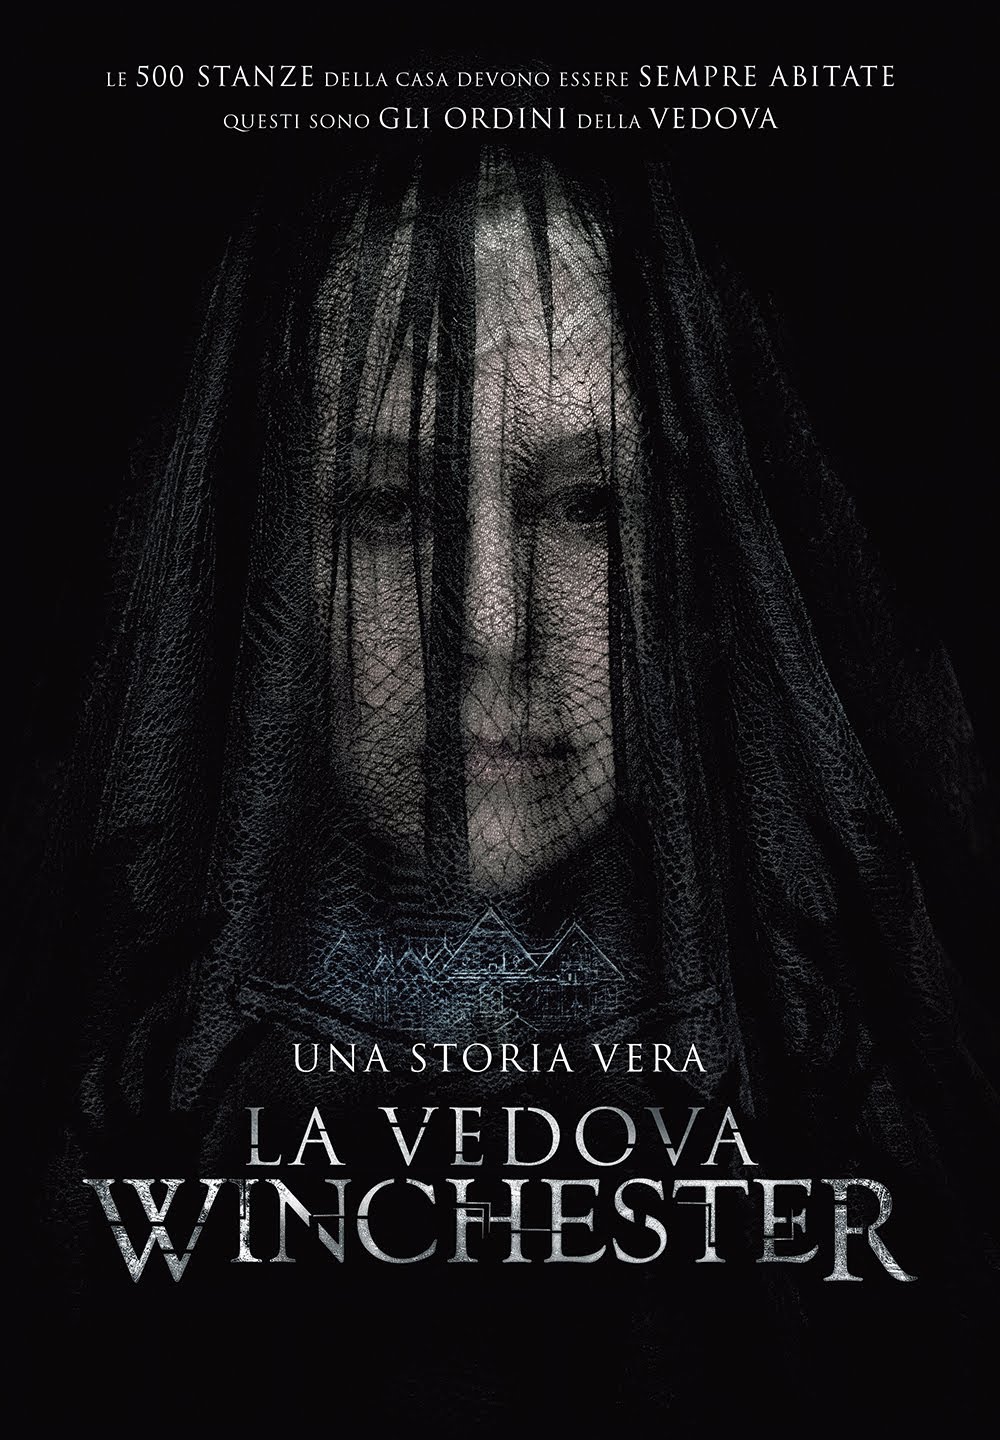 La vedova Winchester [HD] (2018)